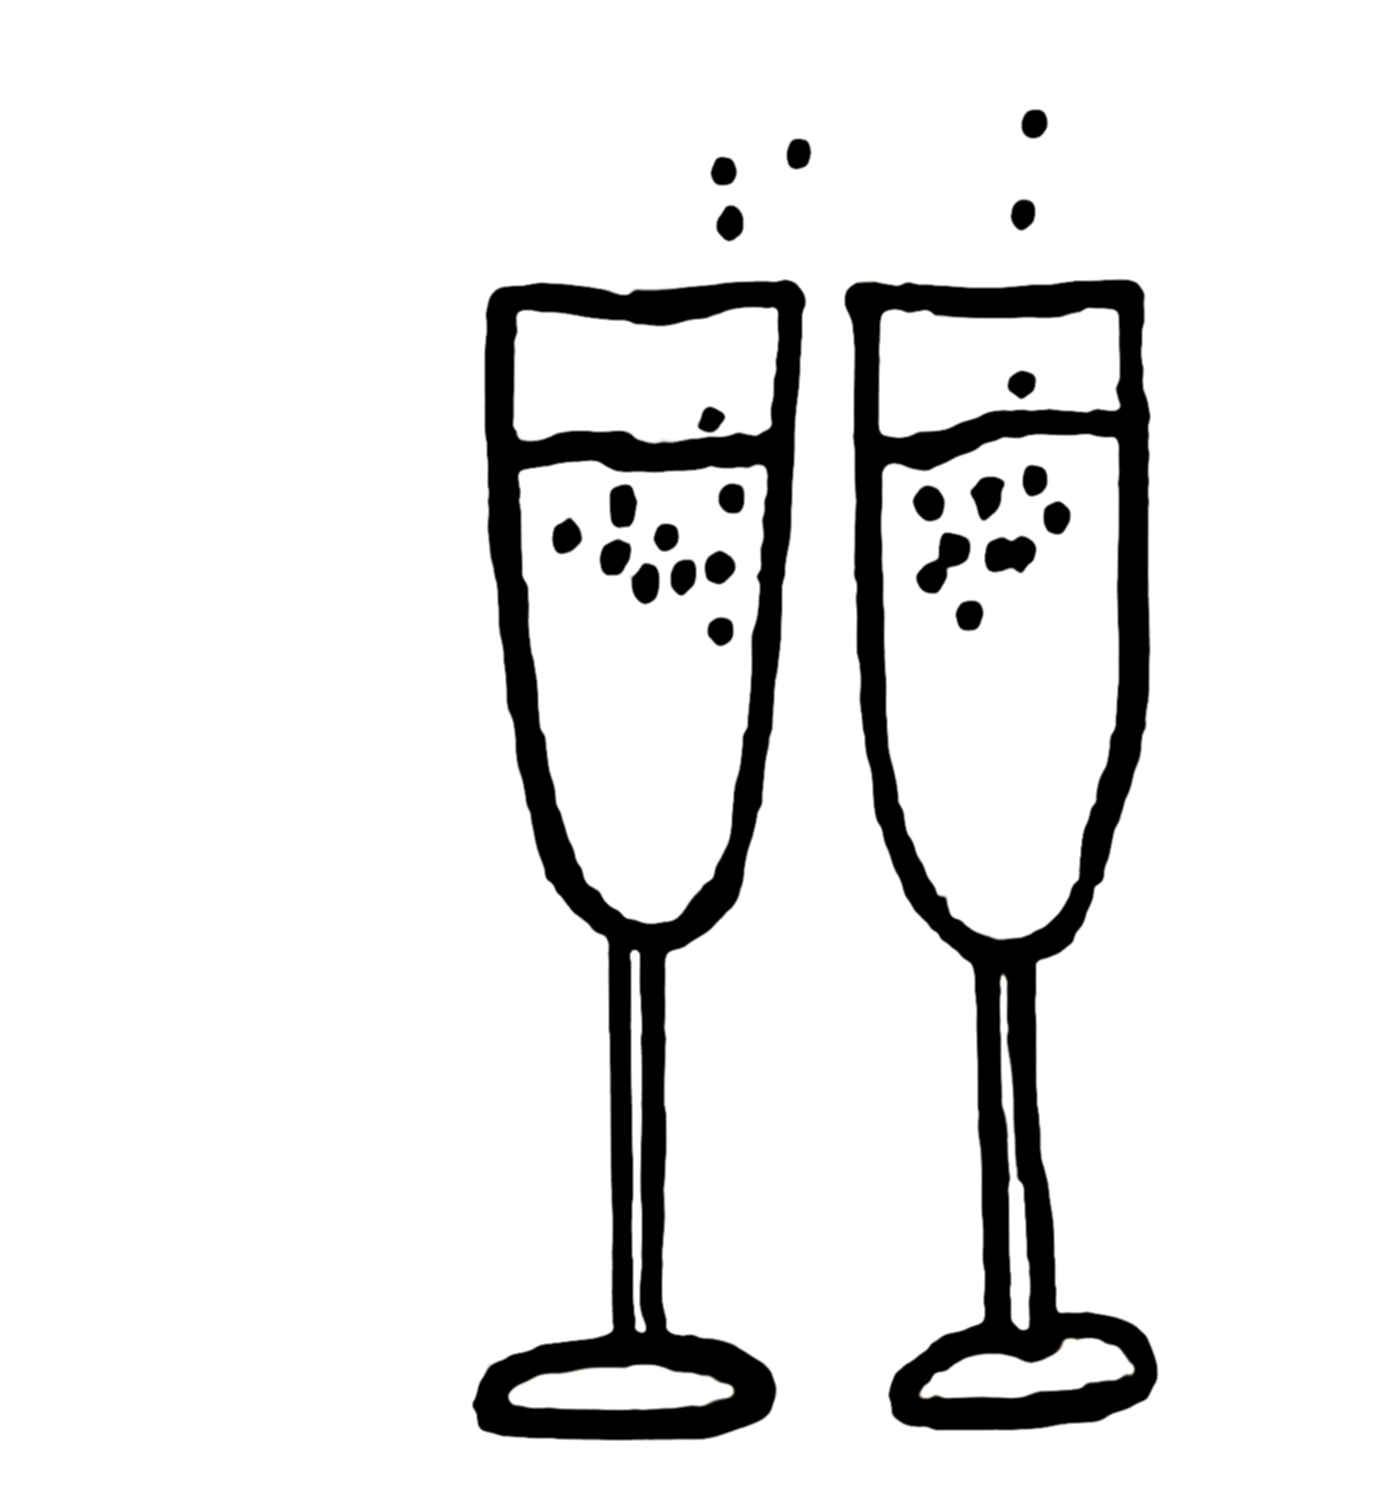 champagne clipart glassware